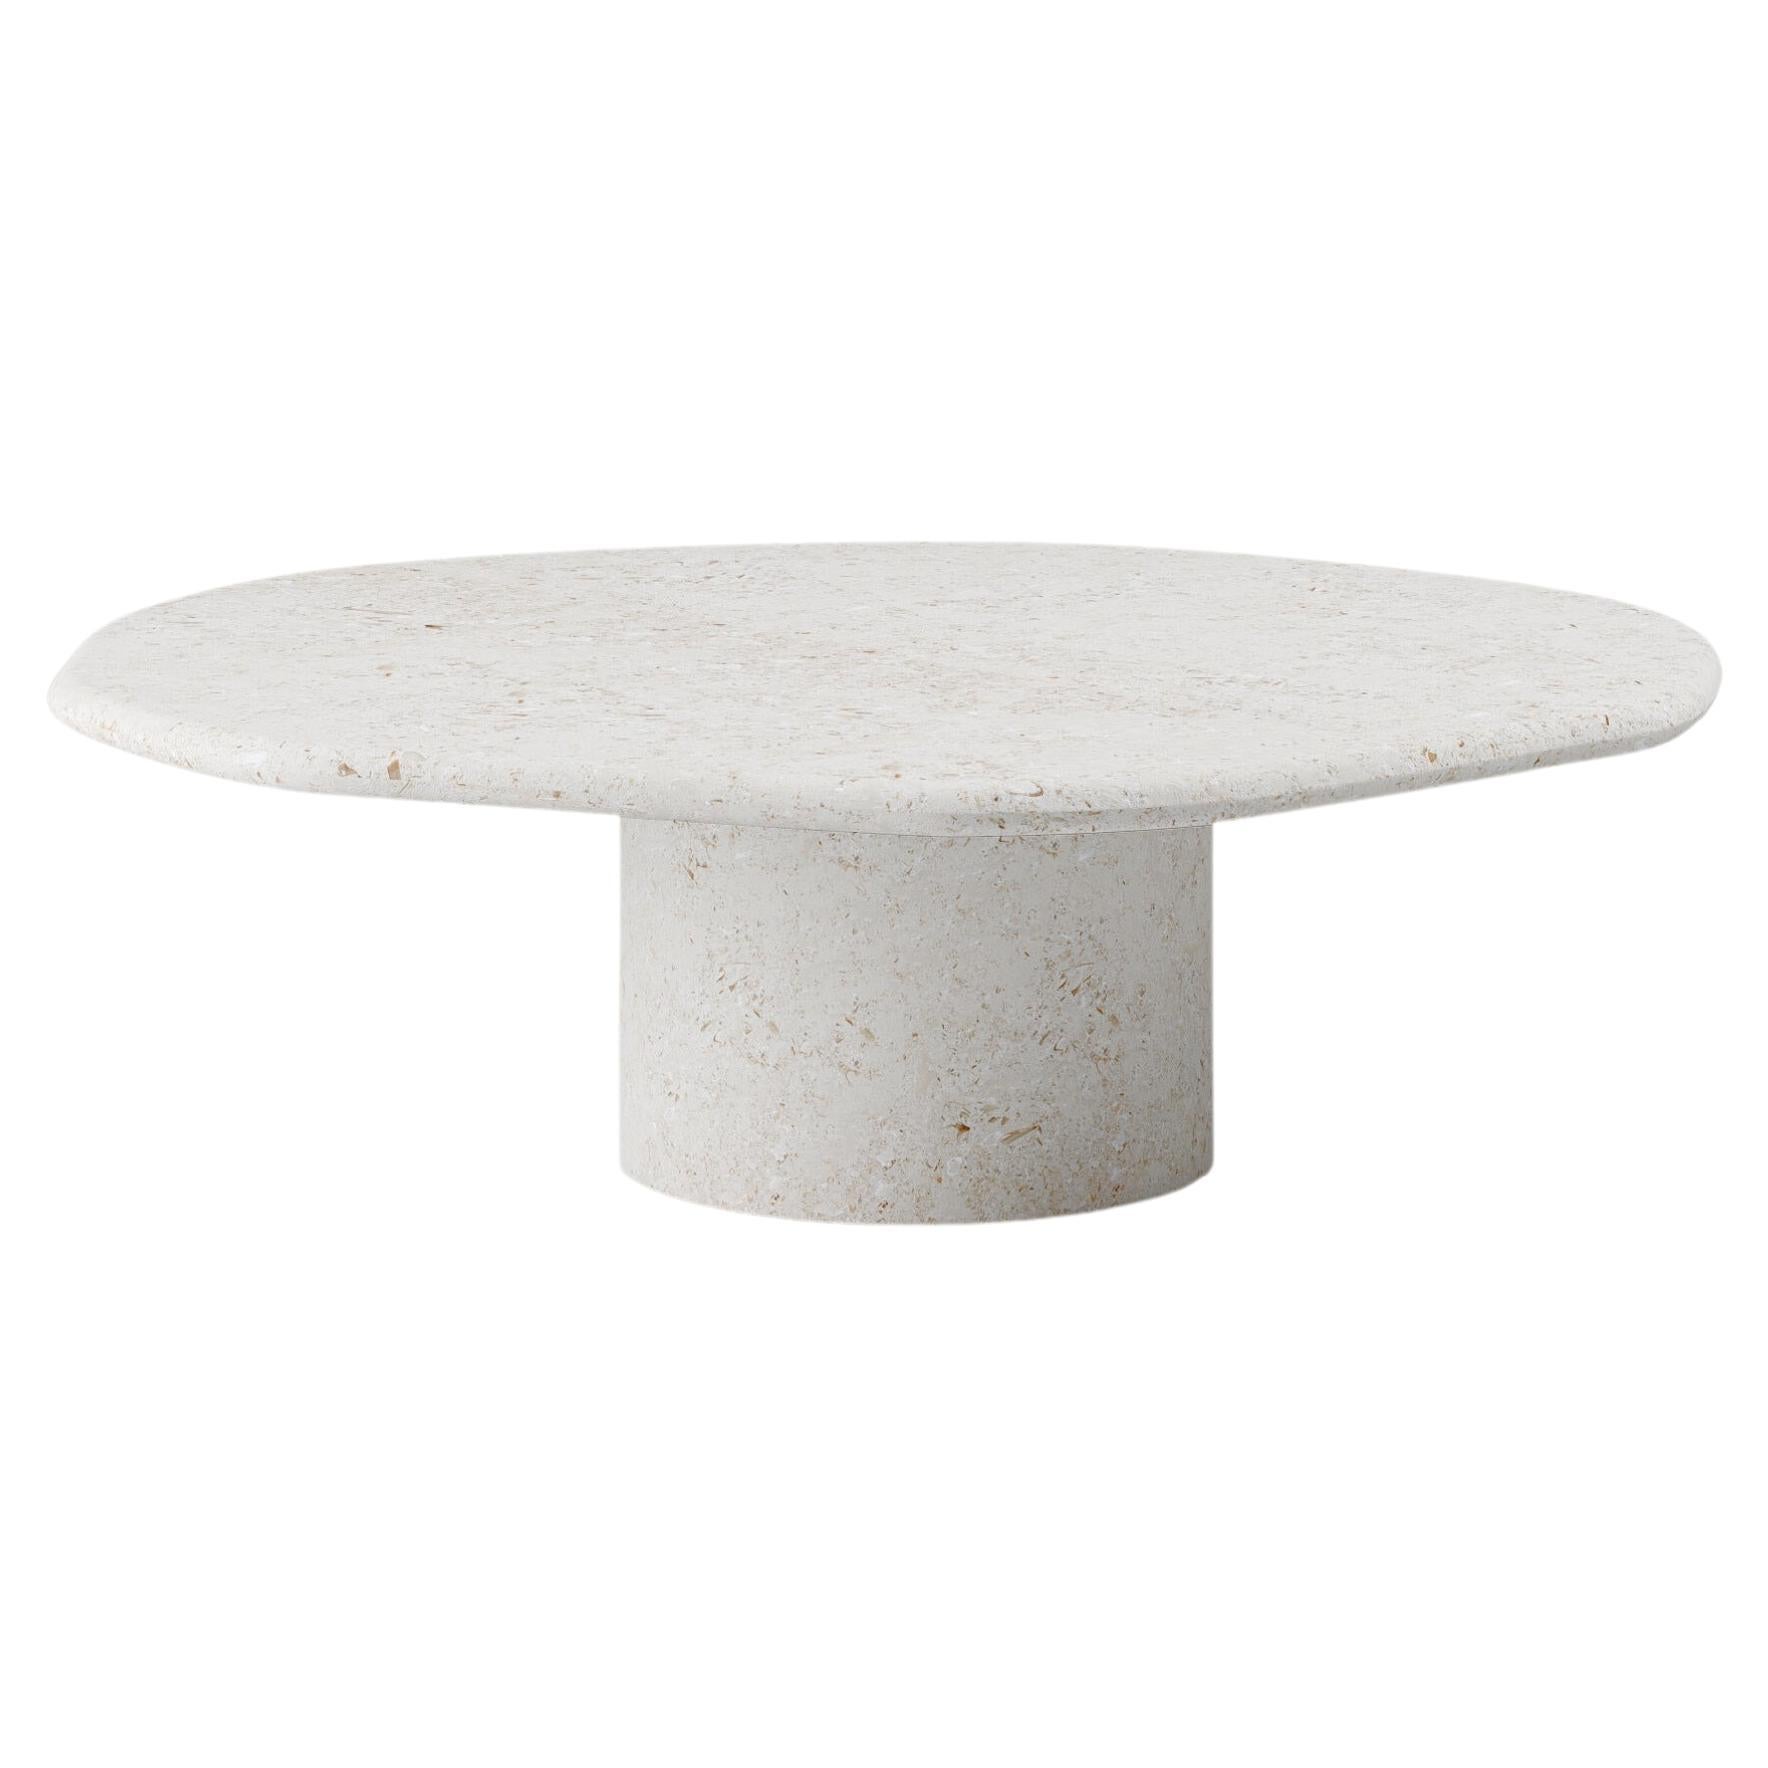 FORM(LA) Lago Round Coffee Table 48”L x 48”W x 14”H Limestone Oceano For Sale